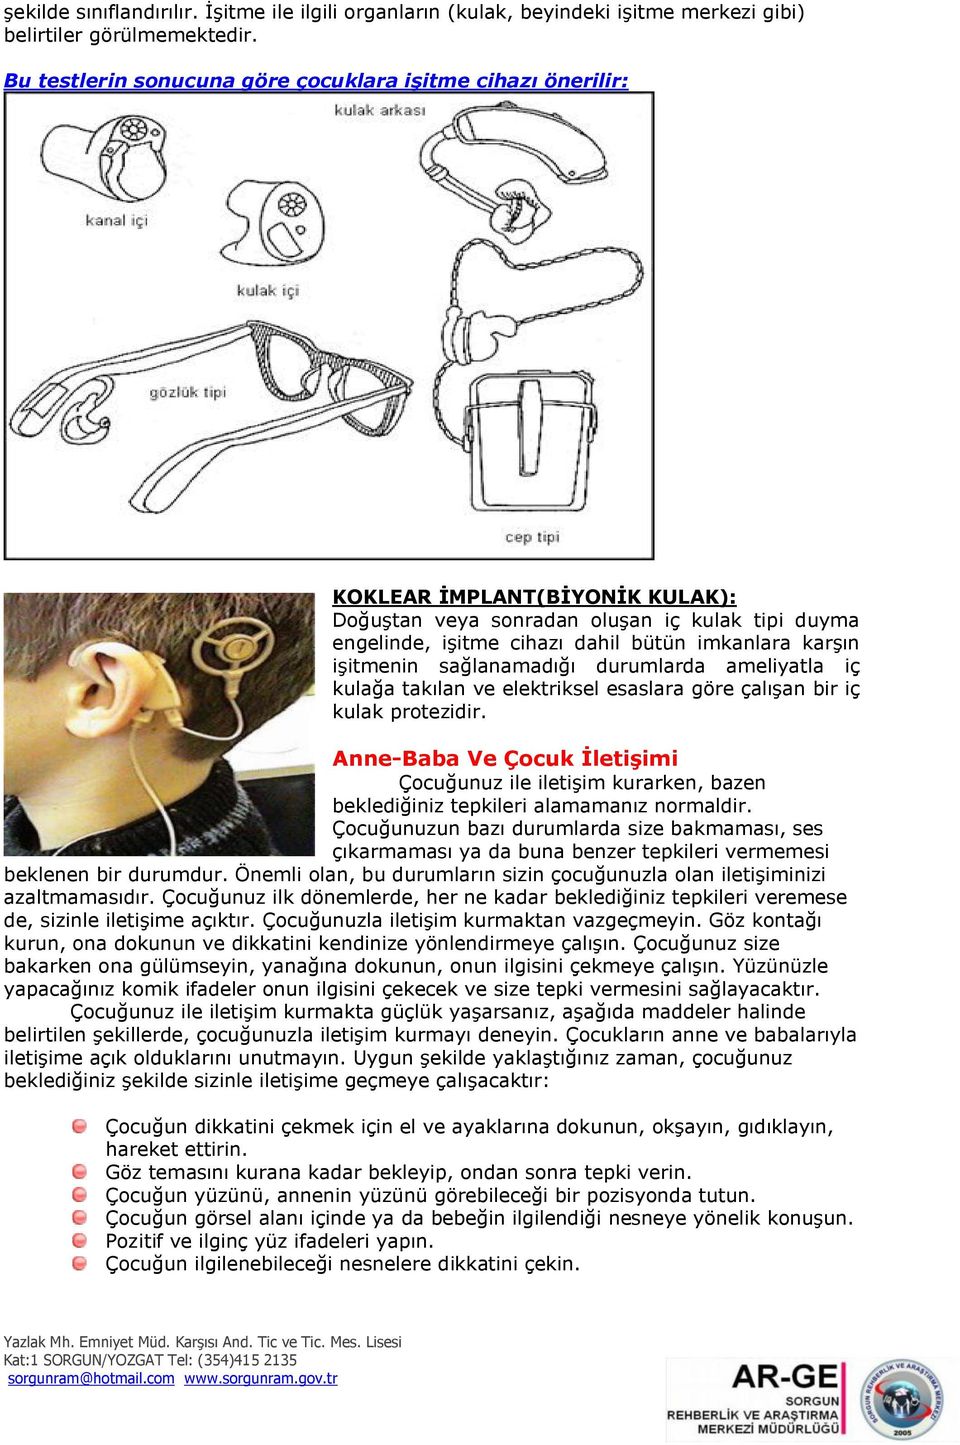 işitmenin sağlanamadığı durumlarda ameliyatla iç kulağa takılan ve elektriksel esaslara göre çalışan bir iç kulak protezidir.